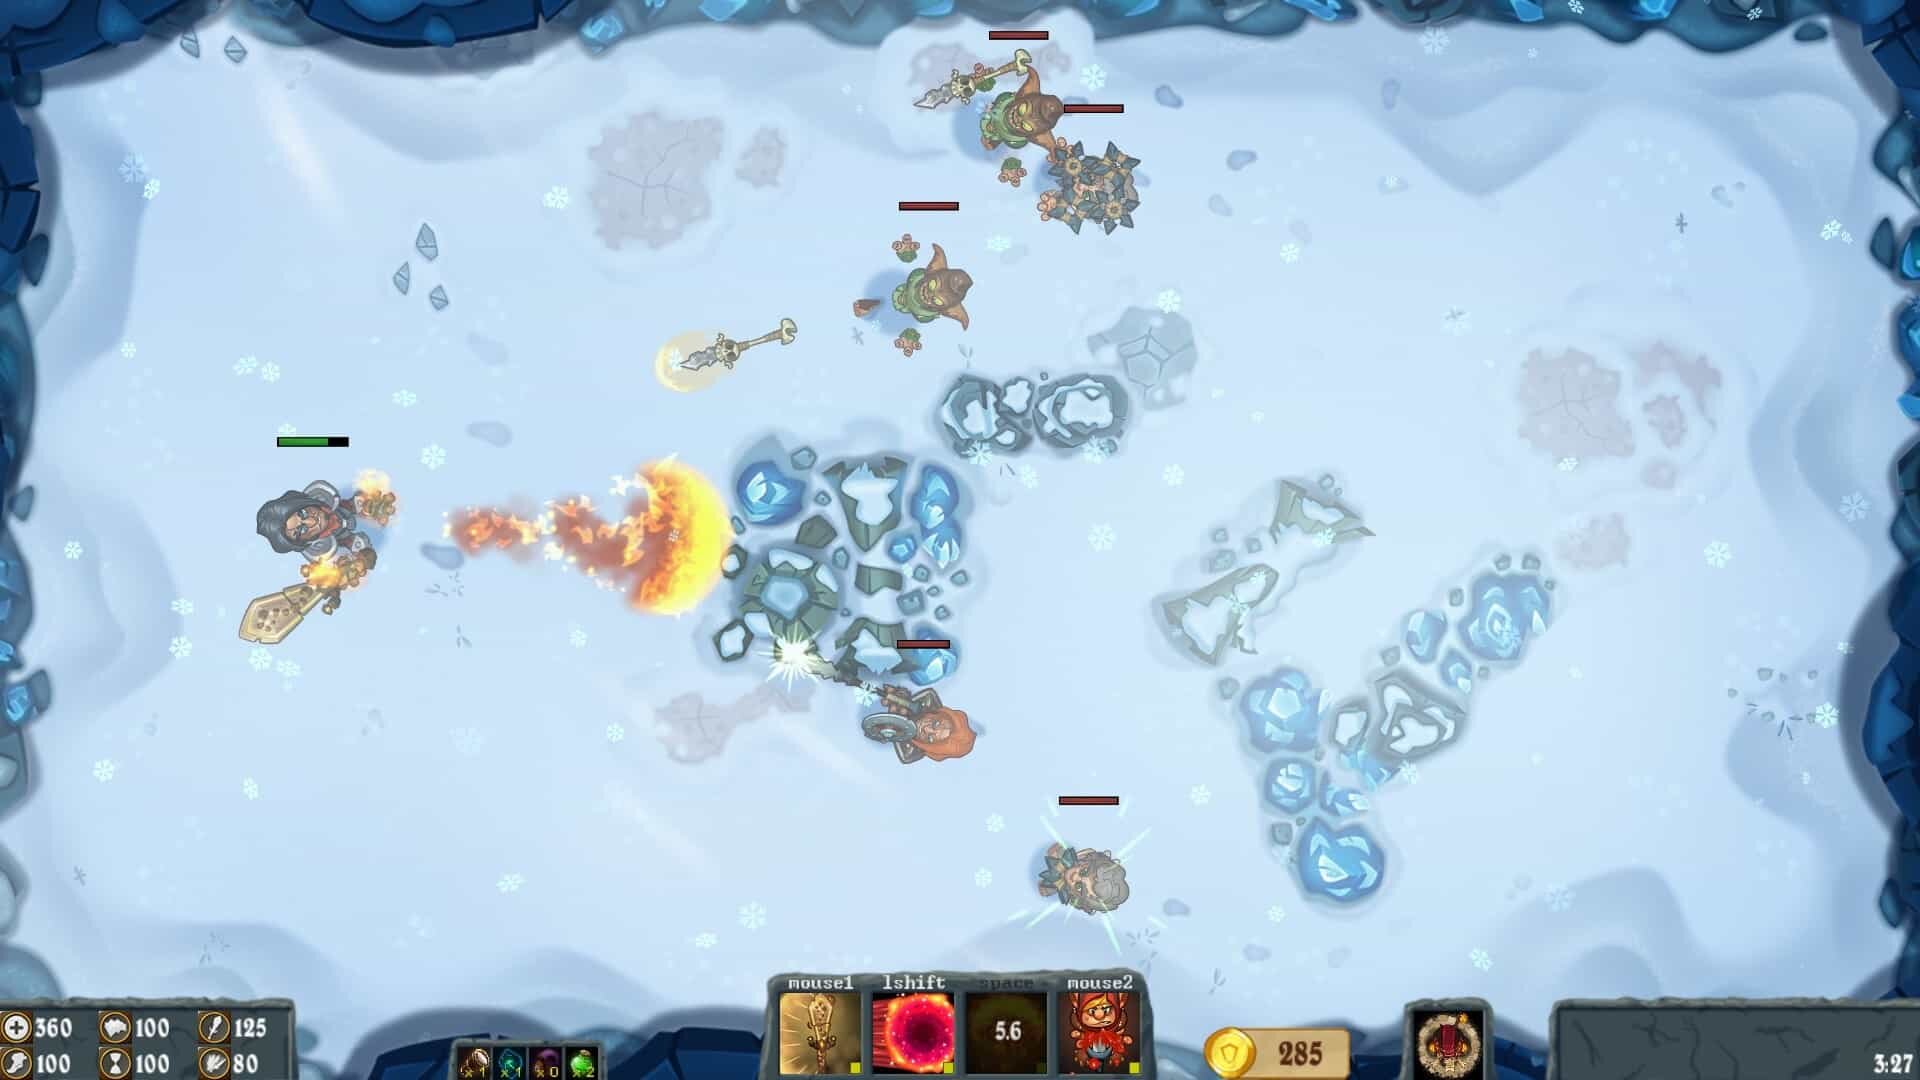 Flamebreak game screenshot, blizzard